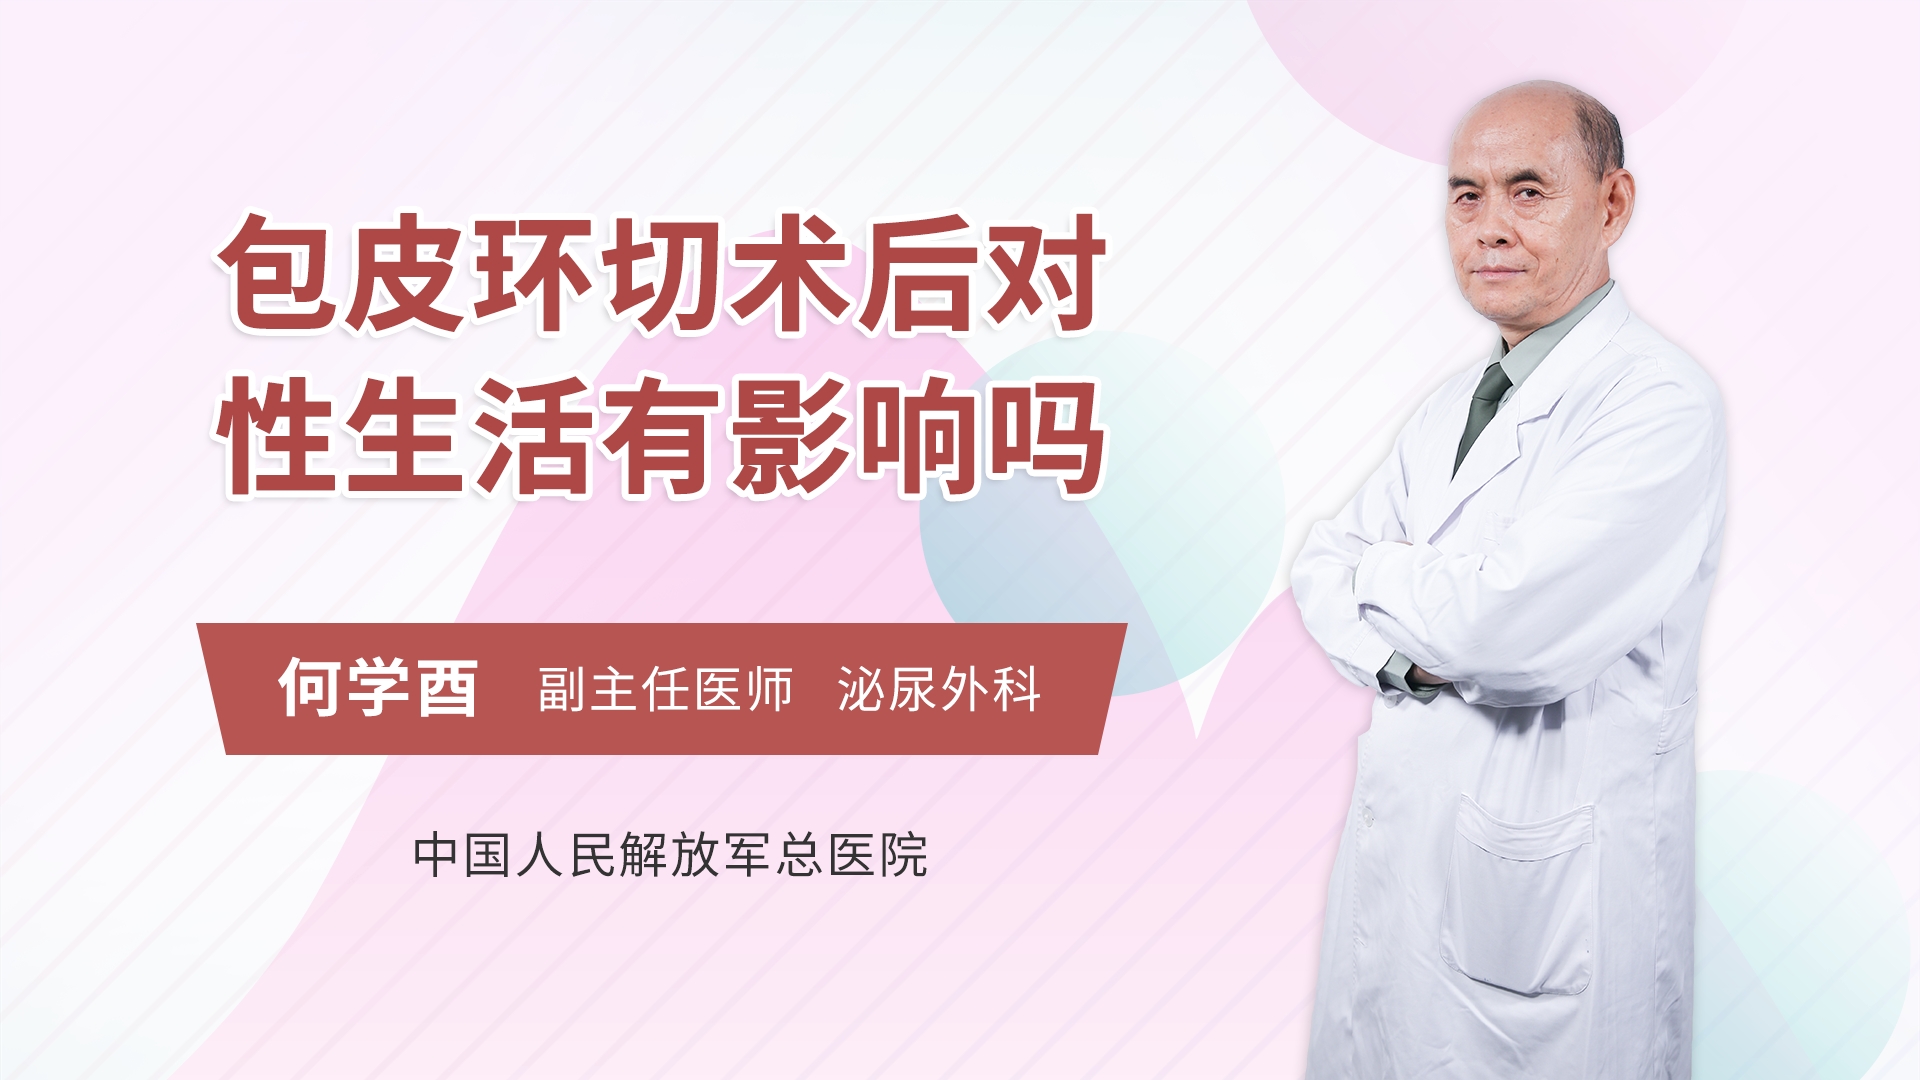 淘寶售DIY割包皮器 悲慘男稱切掉一半 醫生：斷咗駁返都有問題 - 香港 TIMES